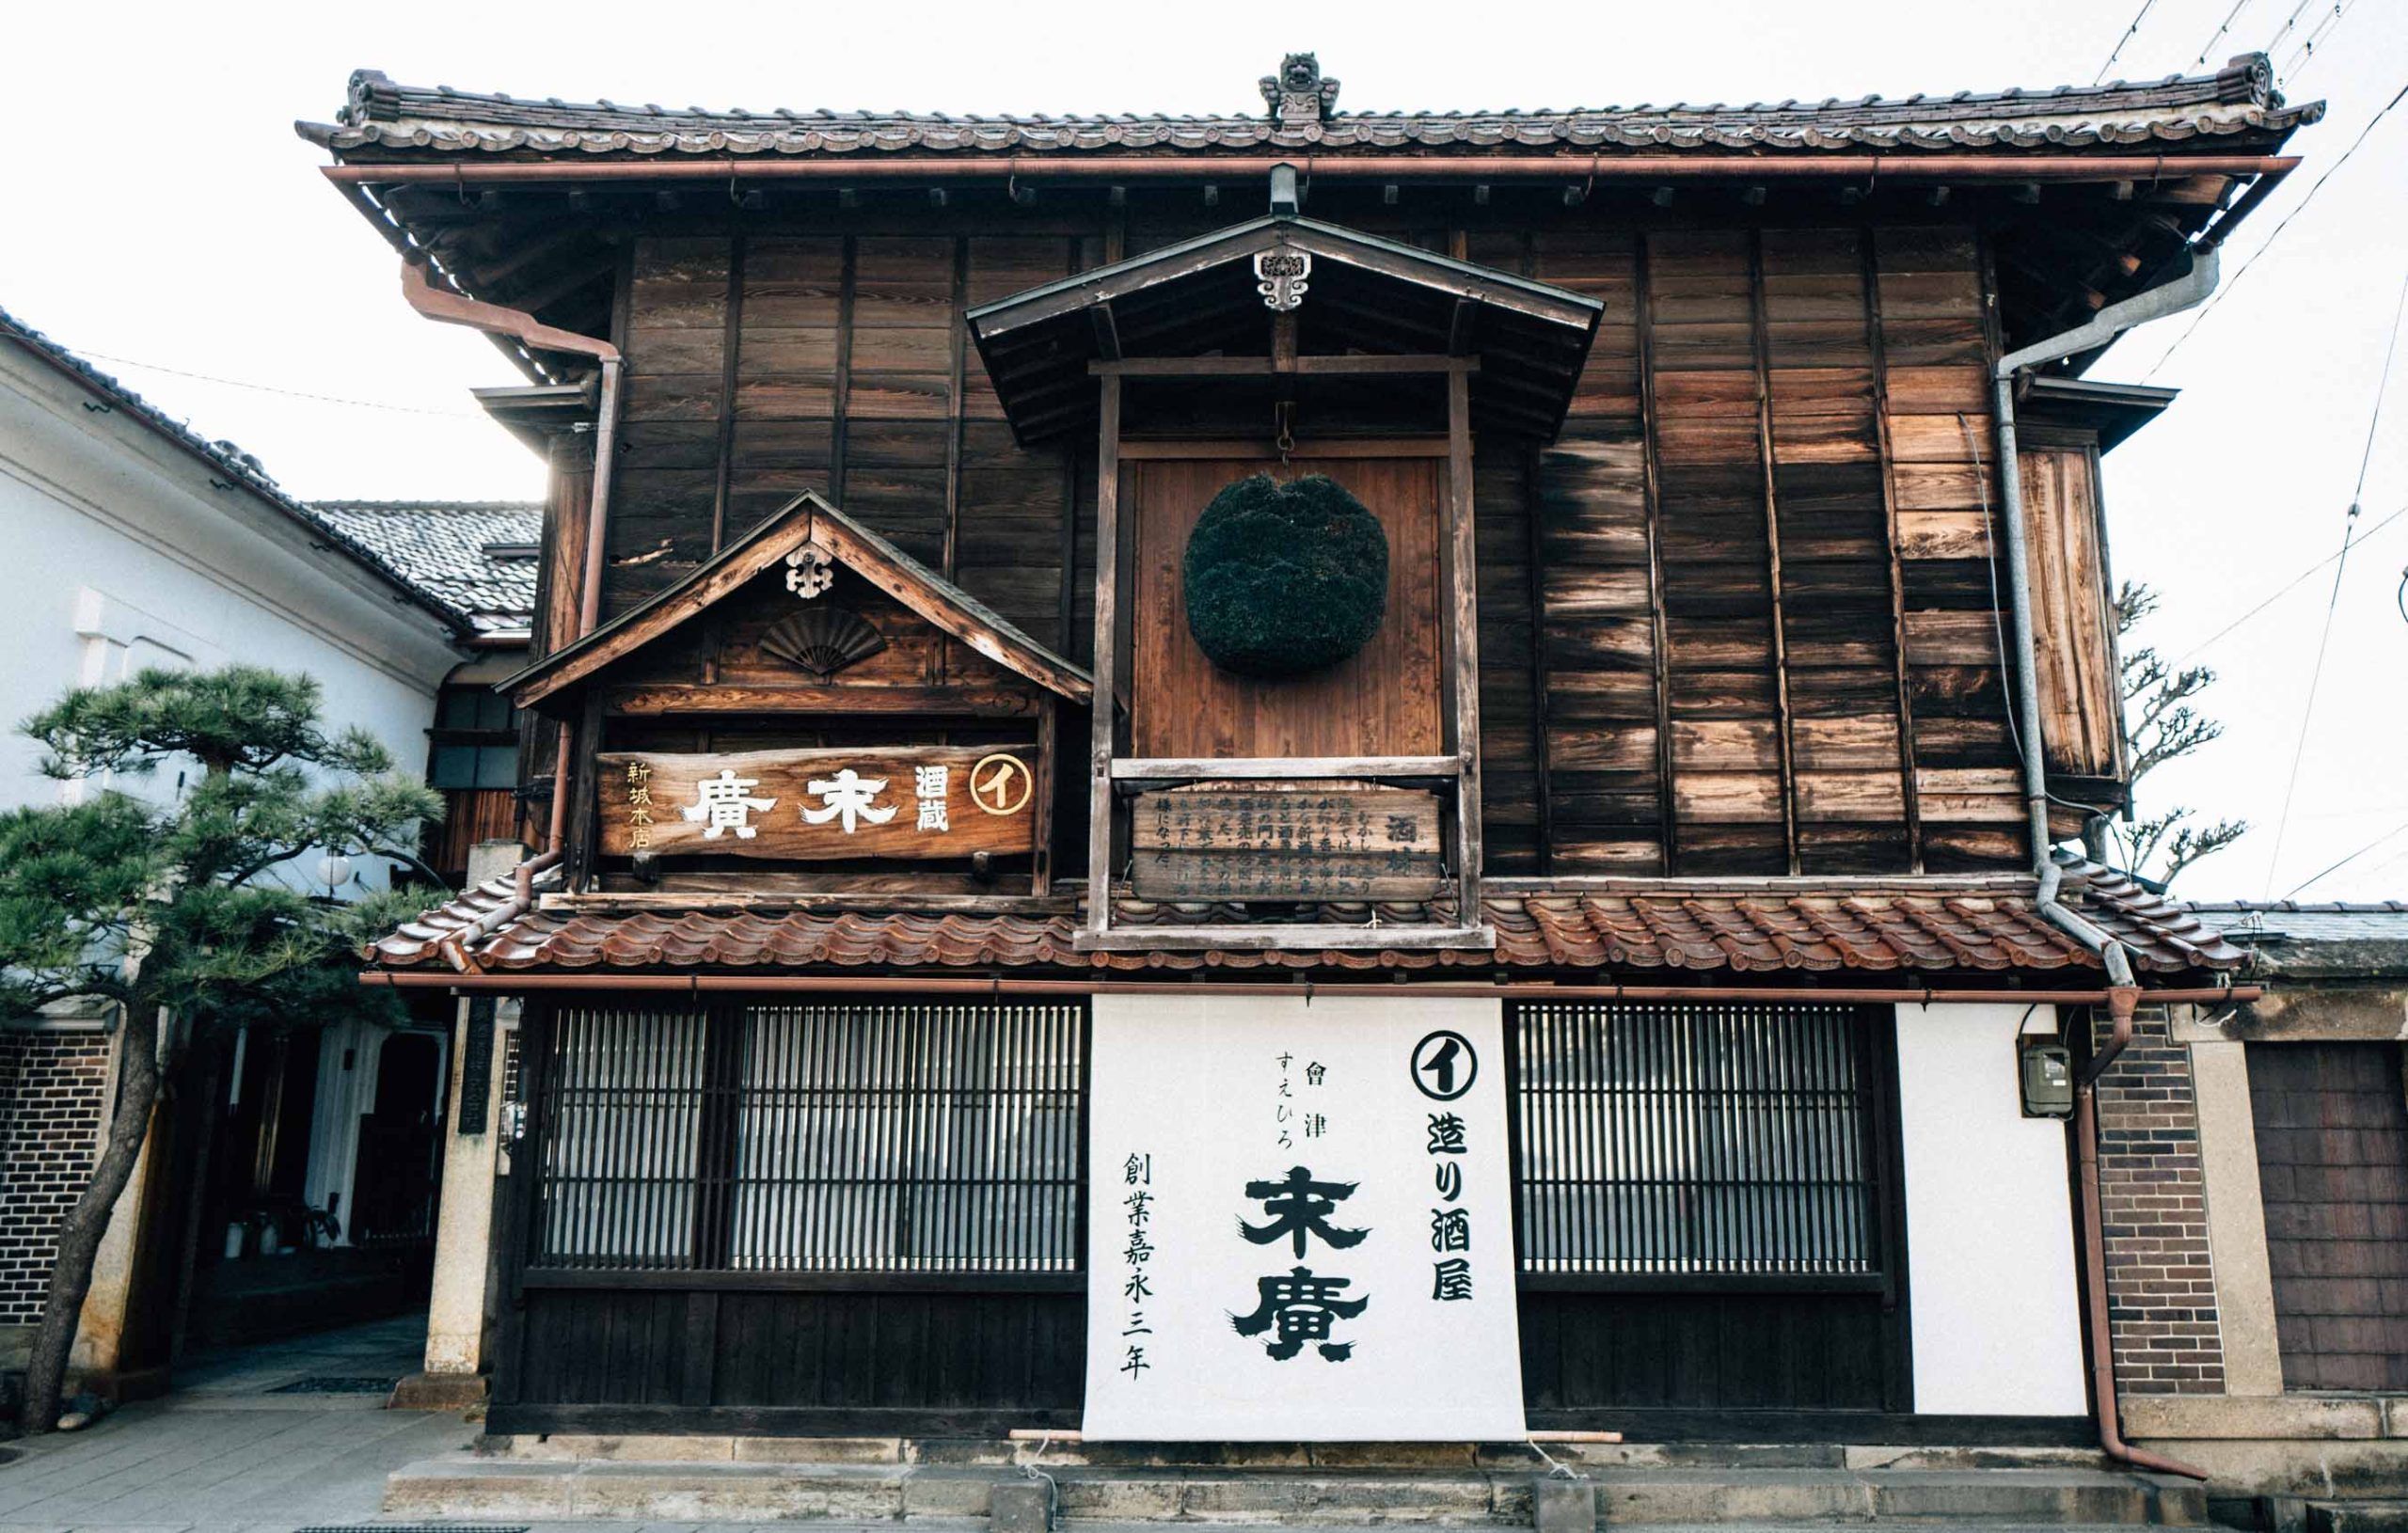 会津若松「末廣酒造 嘉永蔵」で蔵見学と試飲ツアーに参加した。